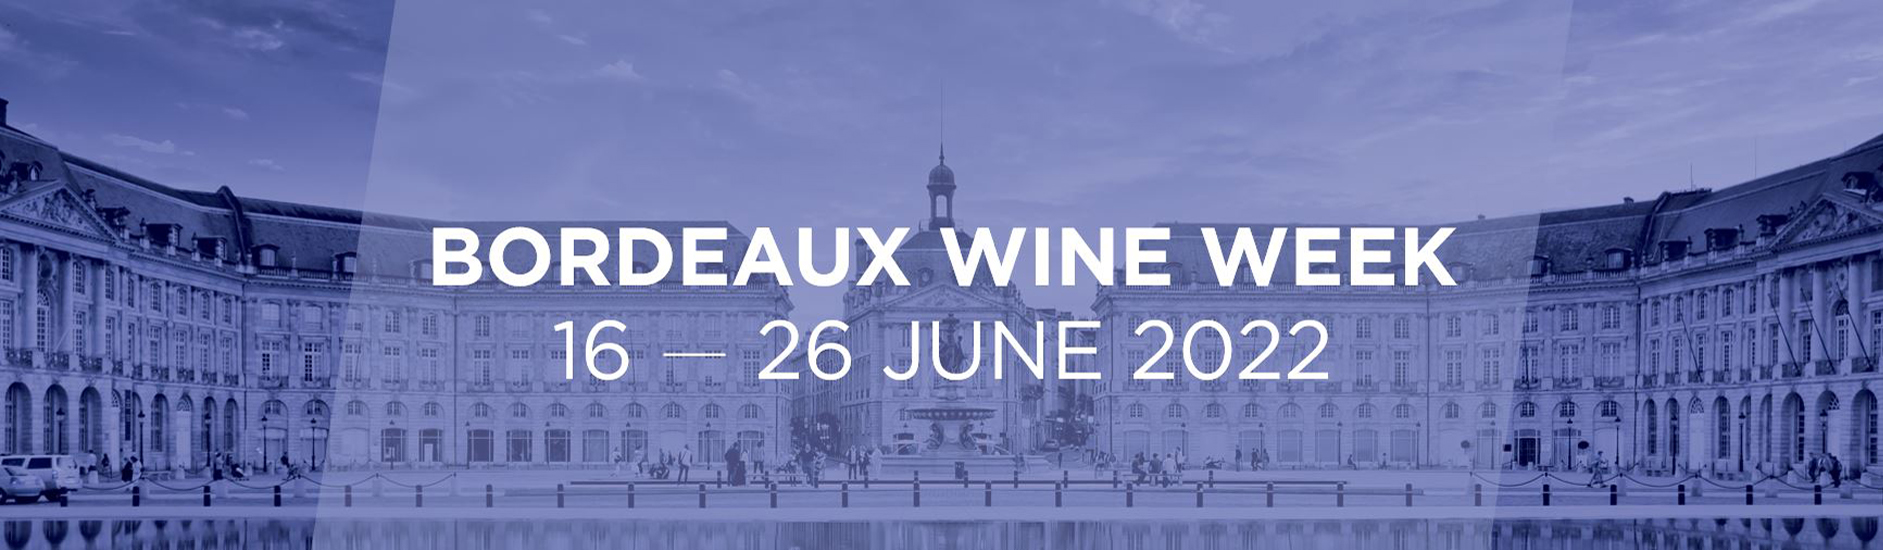 Bordeaux Wine Week juin 2022